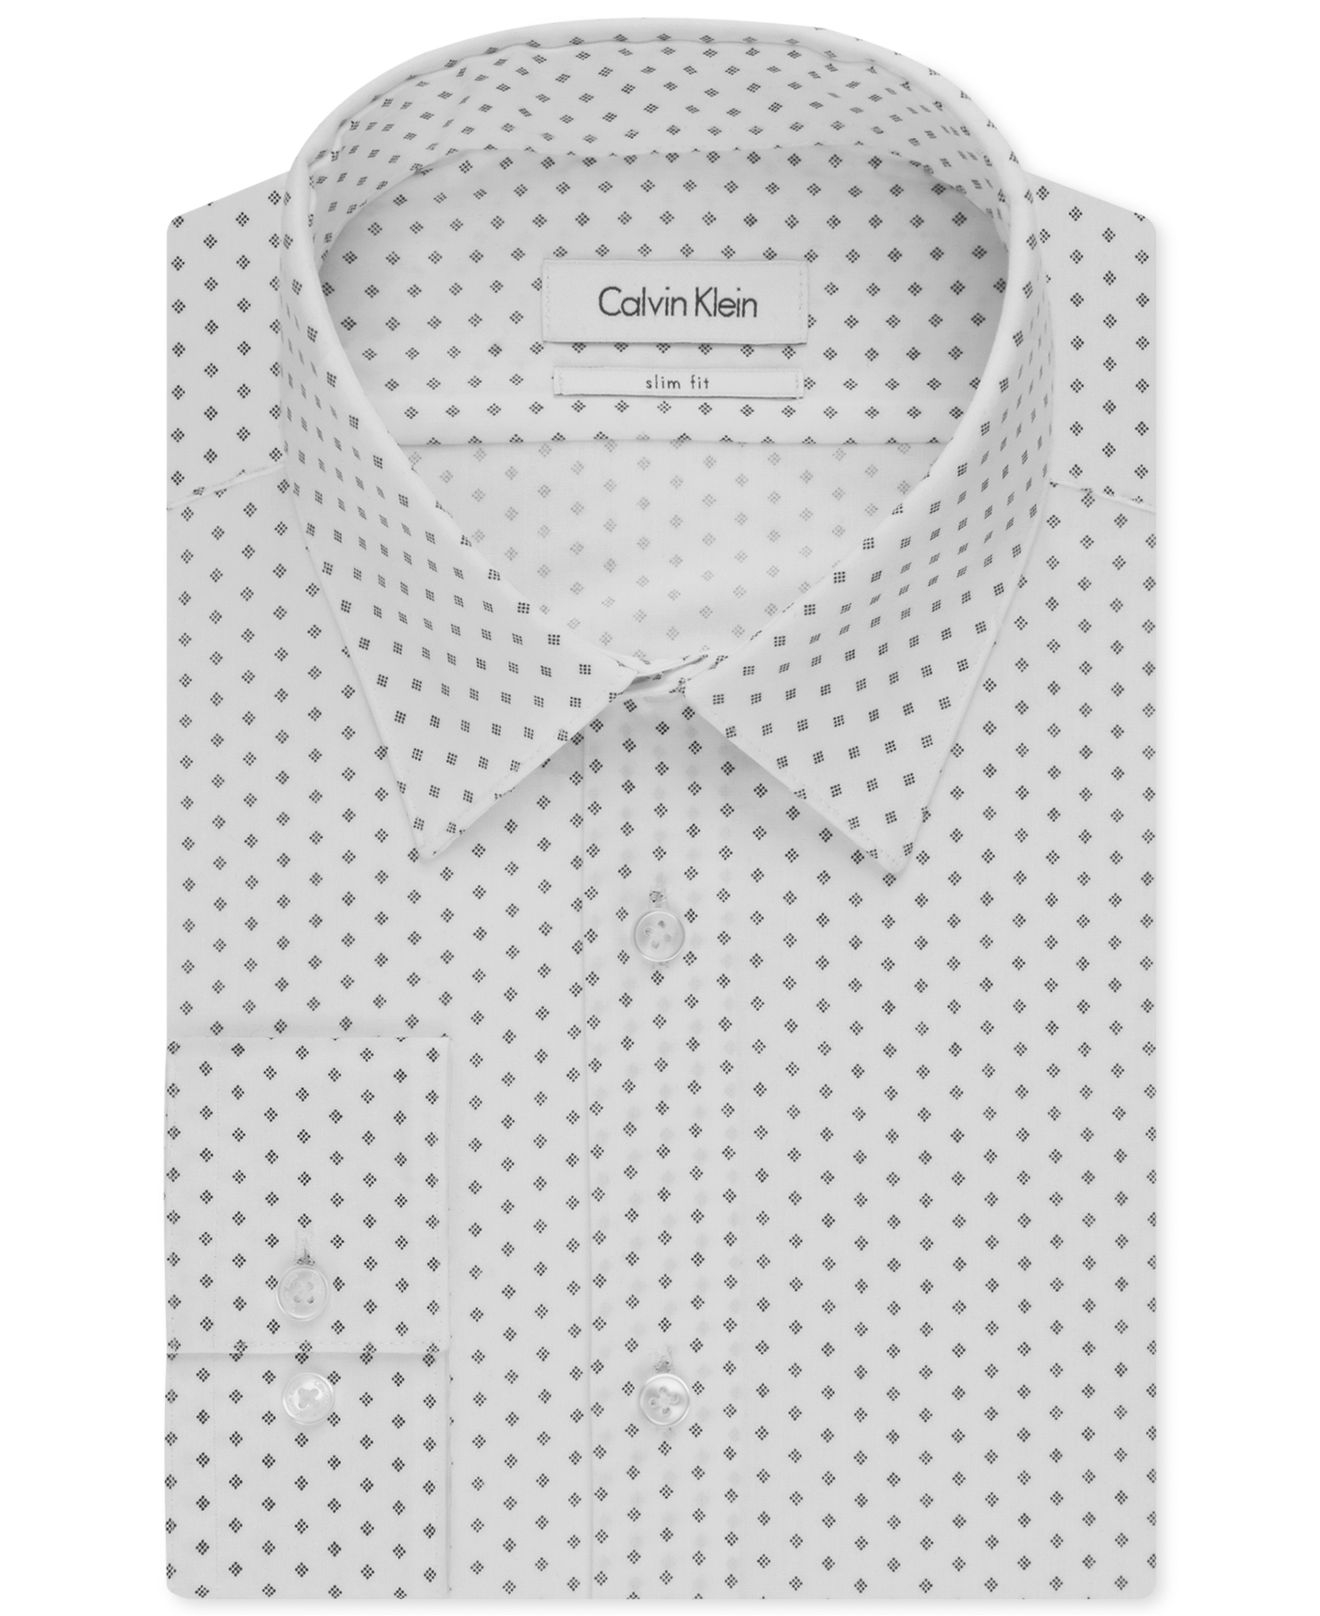 Lyst - Calvin Klein Slim-fit White Patterned Dress Shirt in White for Men